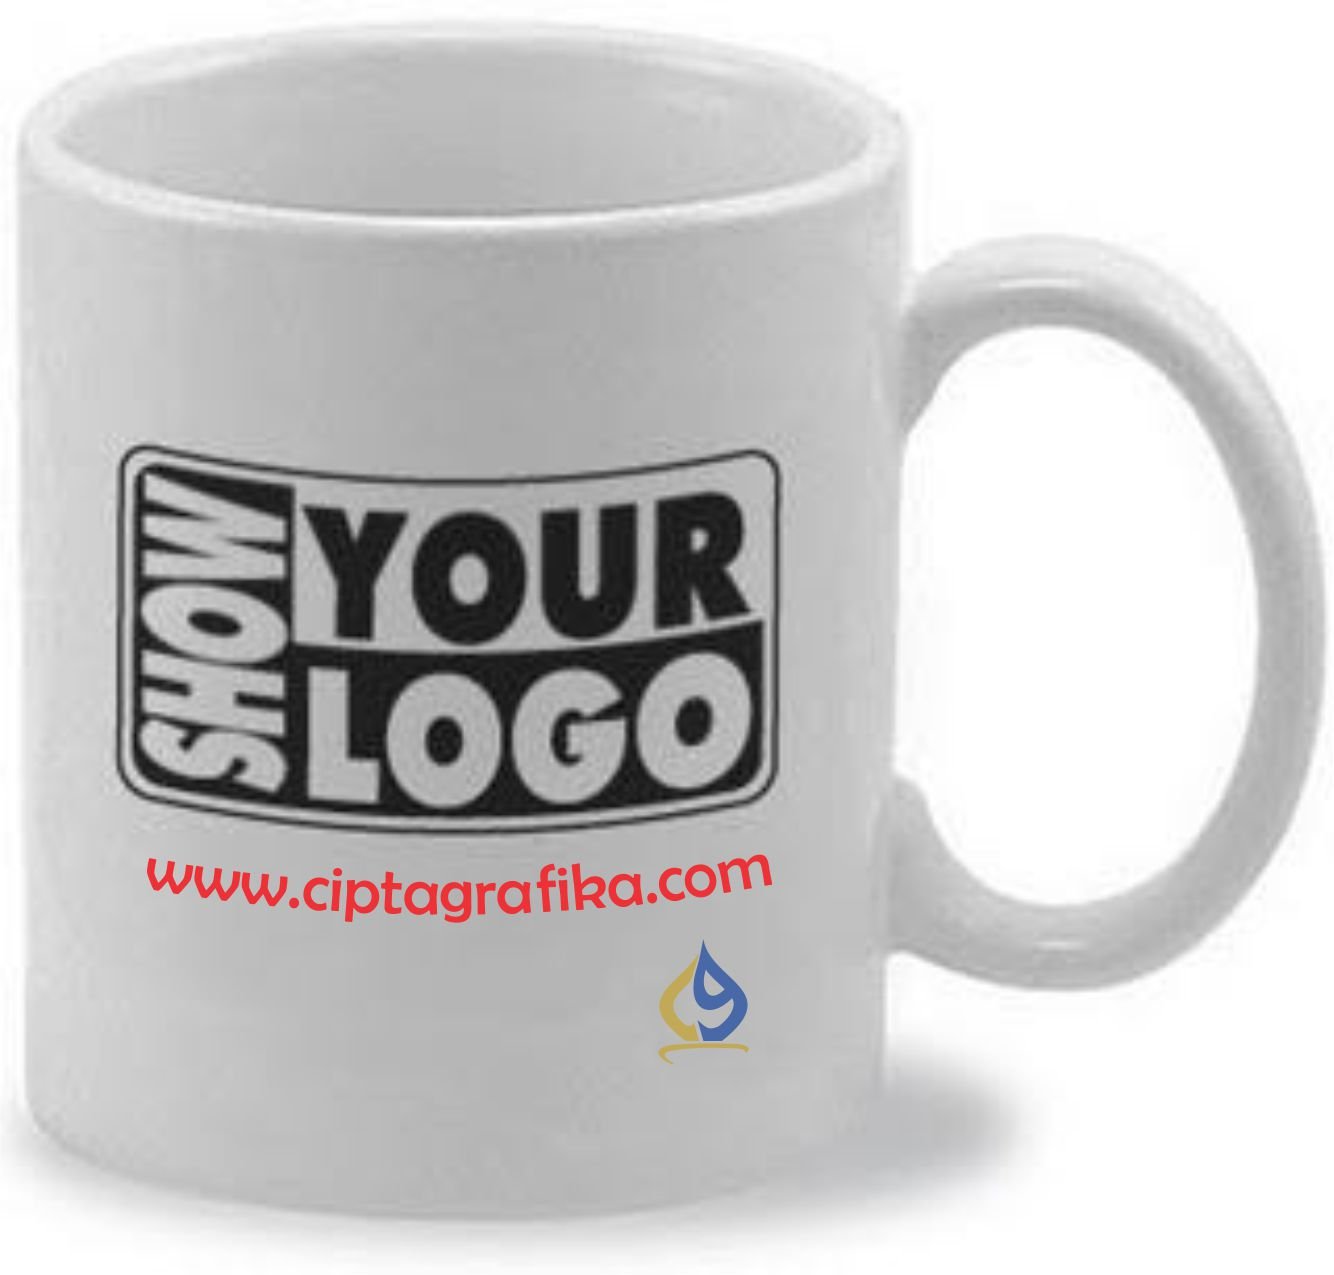 Cetak Mug Merchandise (Digital - Sablon) - Cipta Grafika